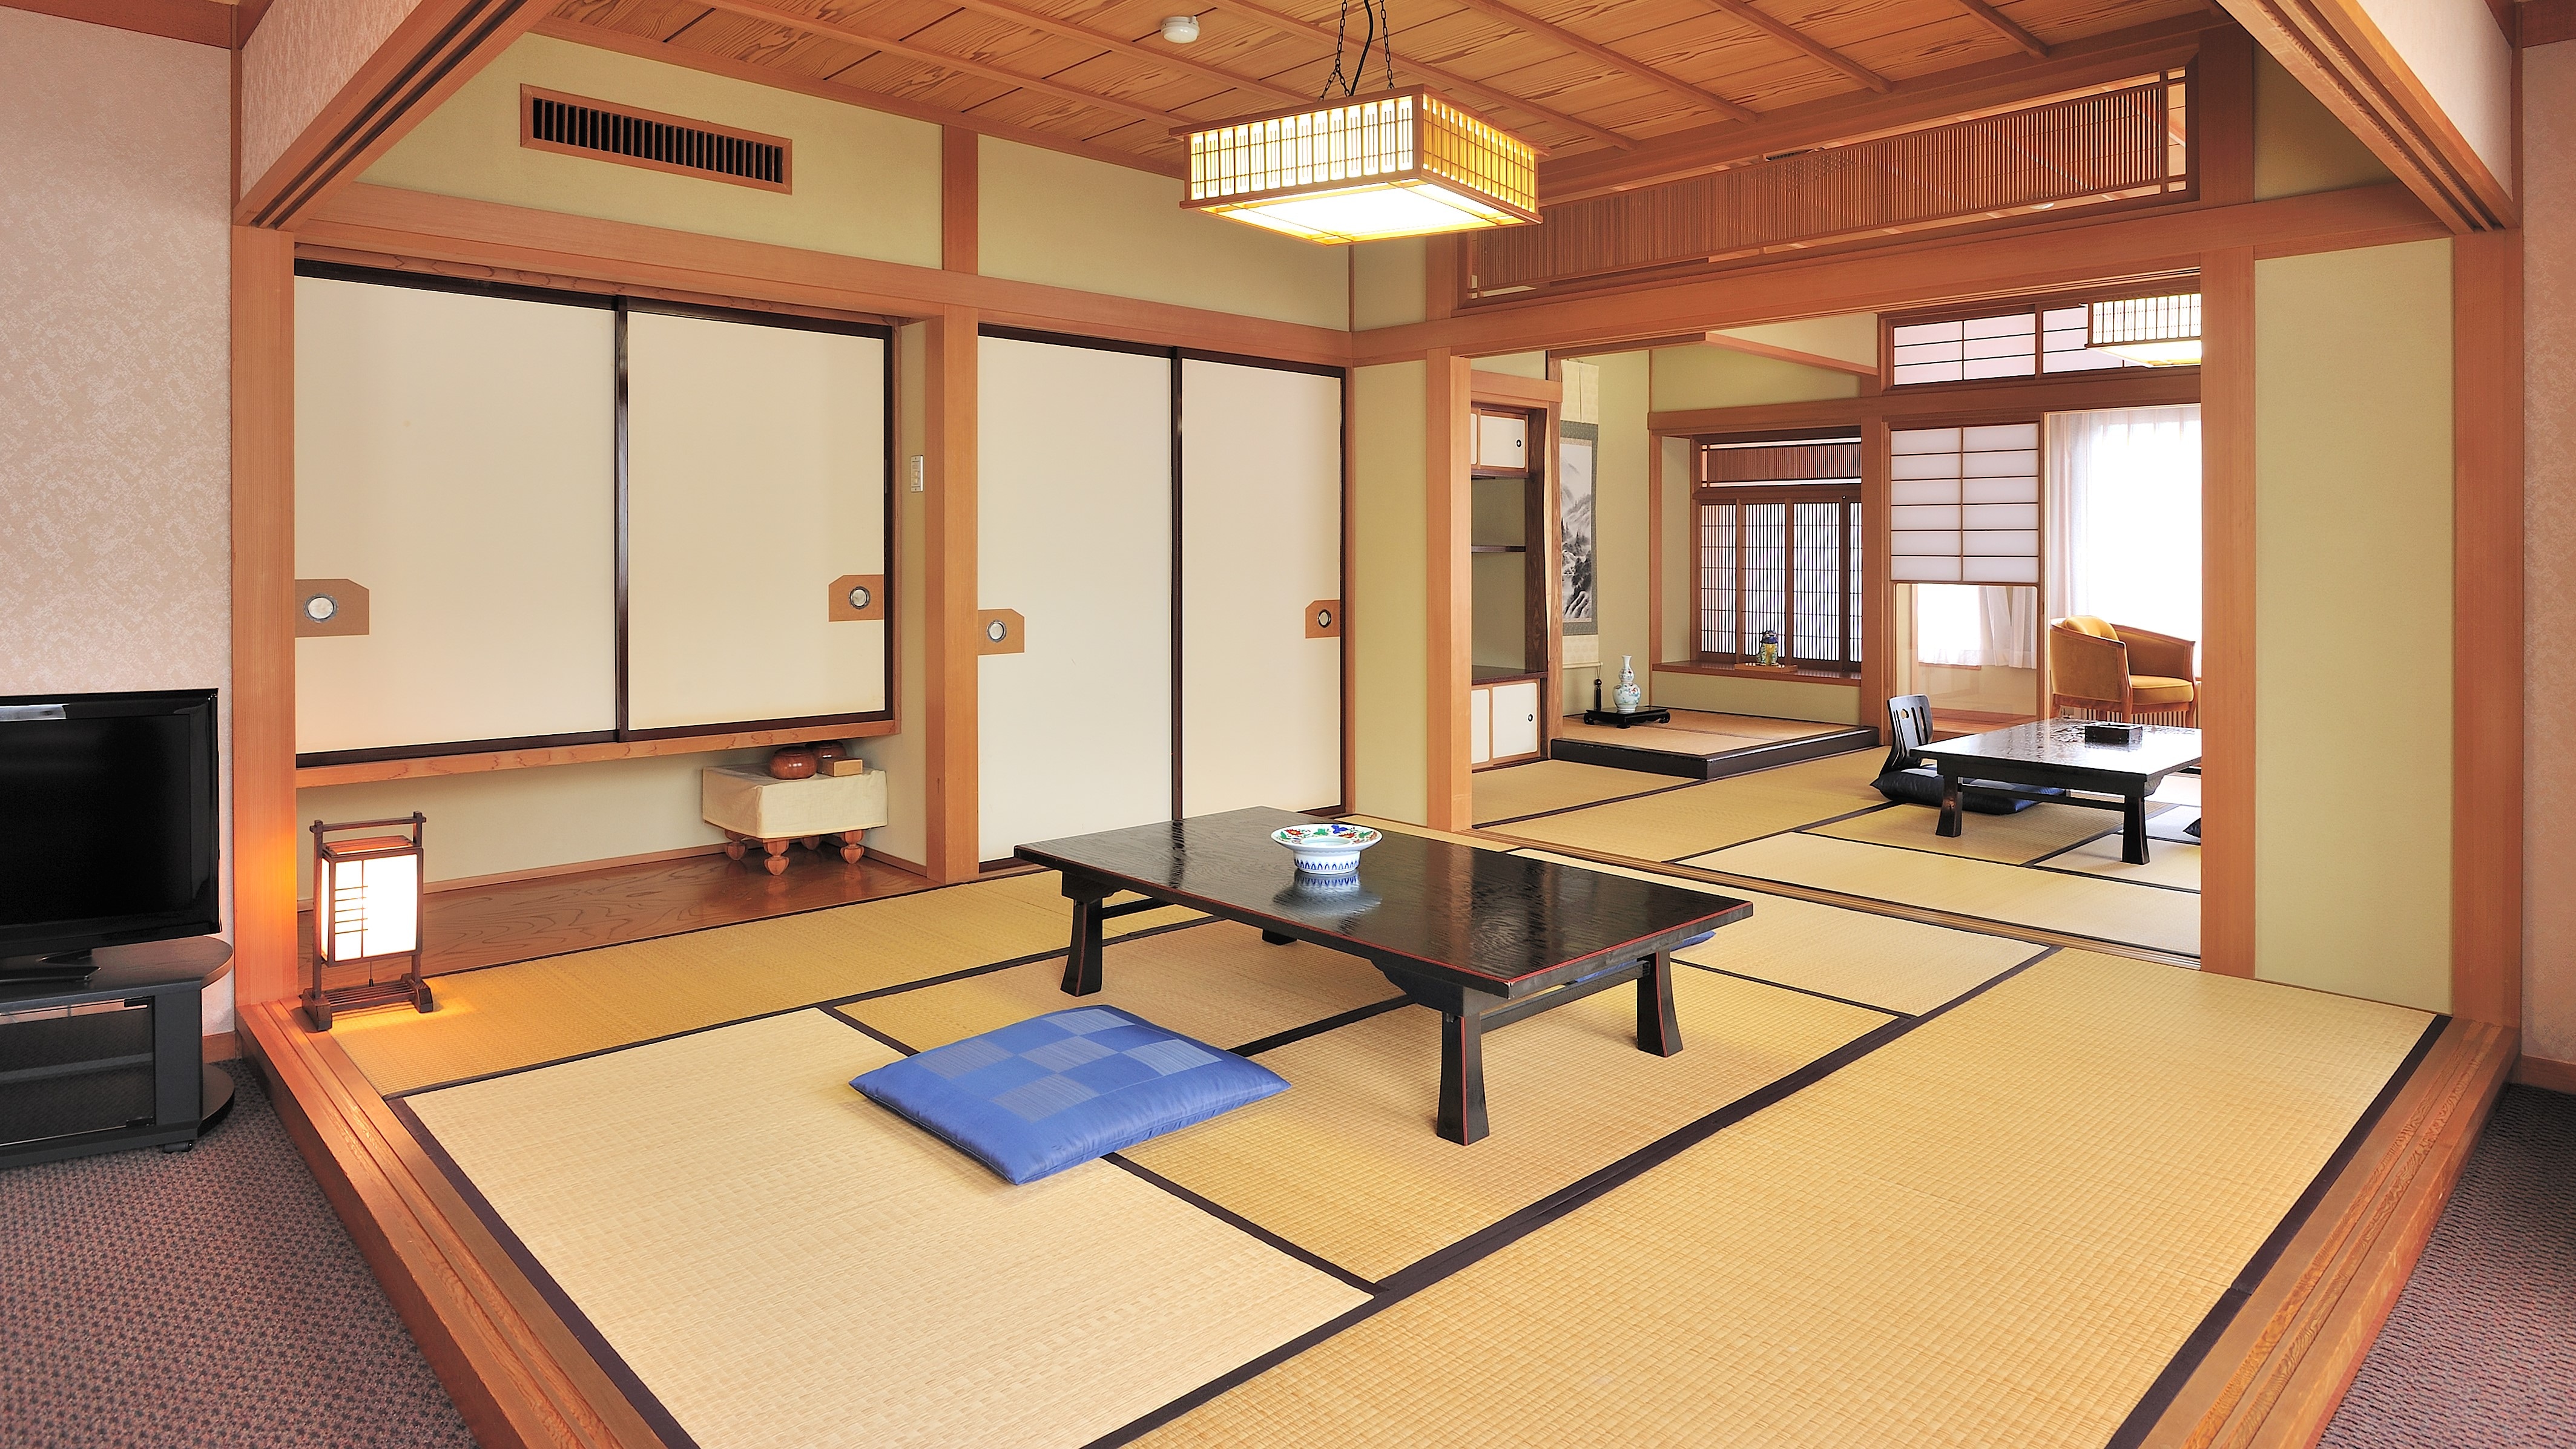 日式房間10張榻榻米+6張榻榻米+帶浴室和衛生間的客廳